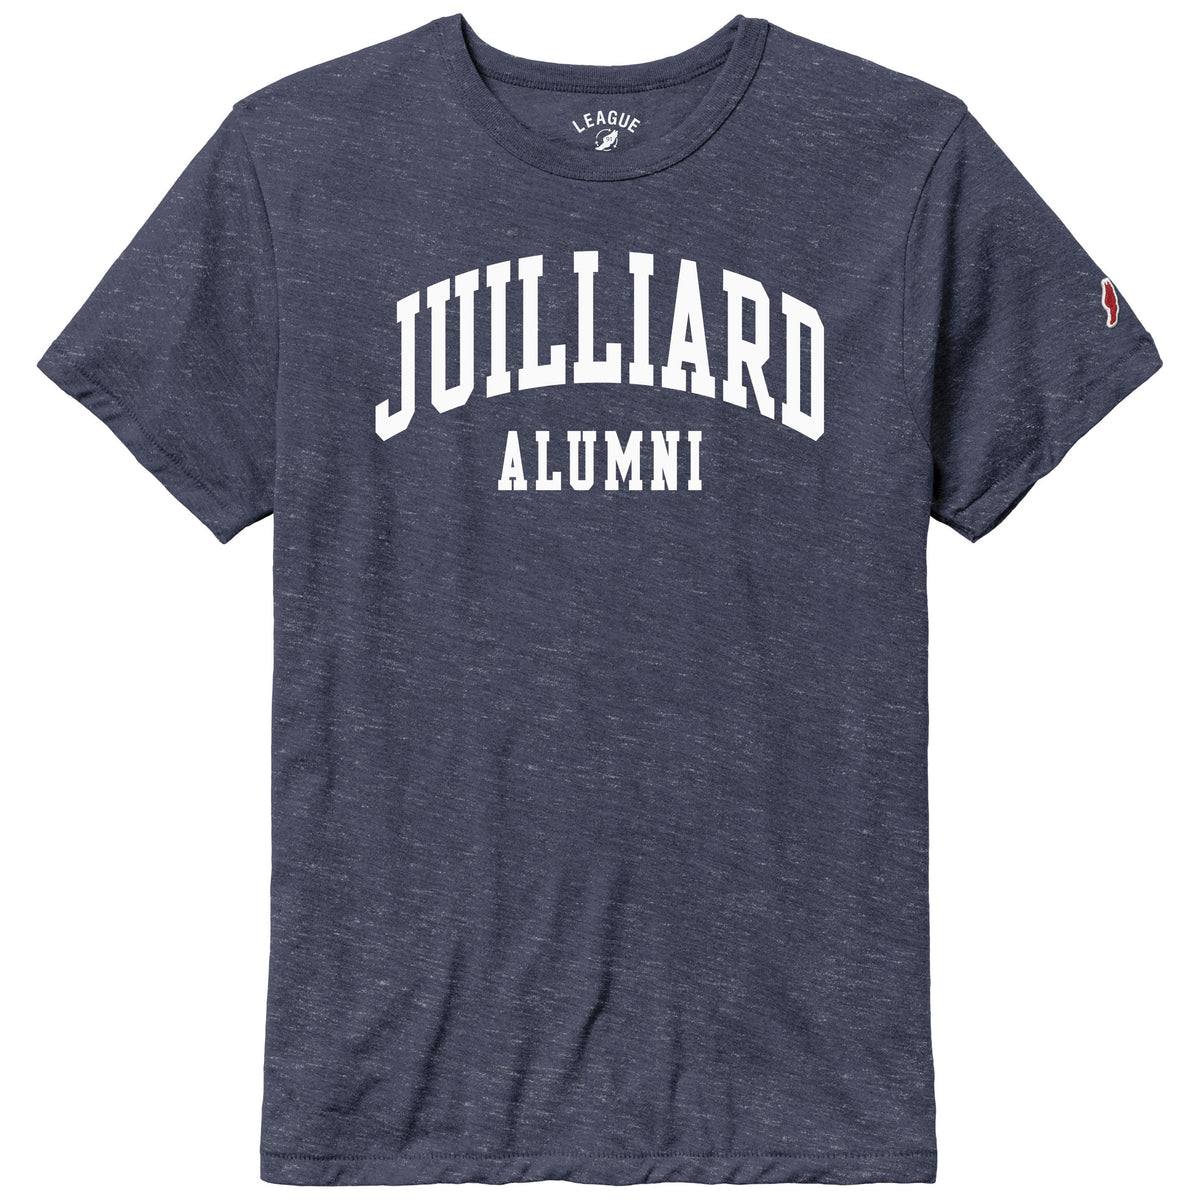 T-Shirt: Juilliard Alumni (Earth friendly)